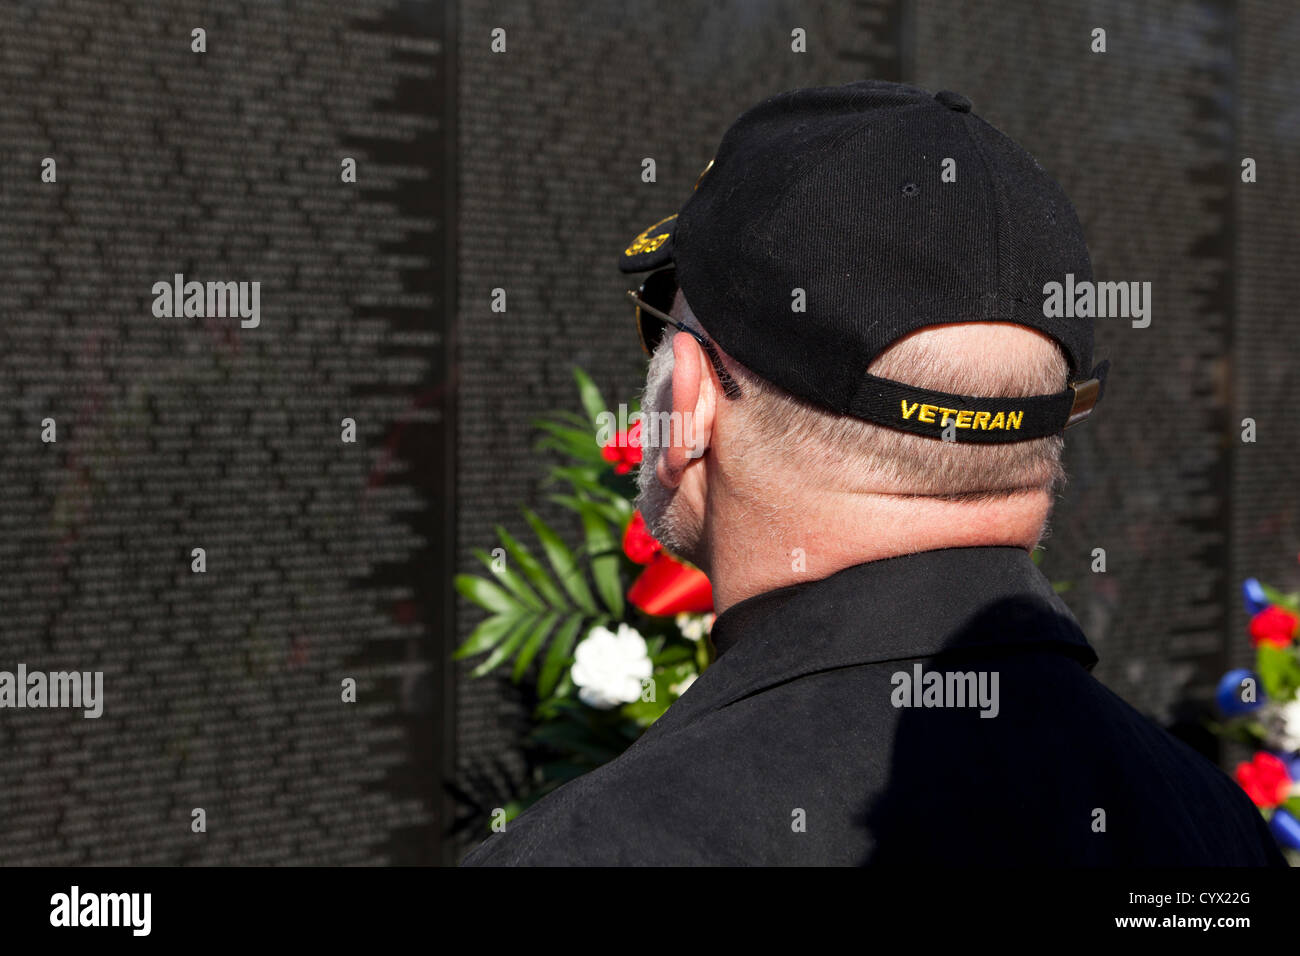 November 11, 2012: A veteran searches for a fallen soldier's name on the Vietnam War Memorial - Washington, DC USA Stock Photo